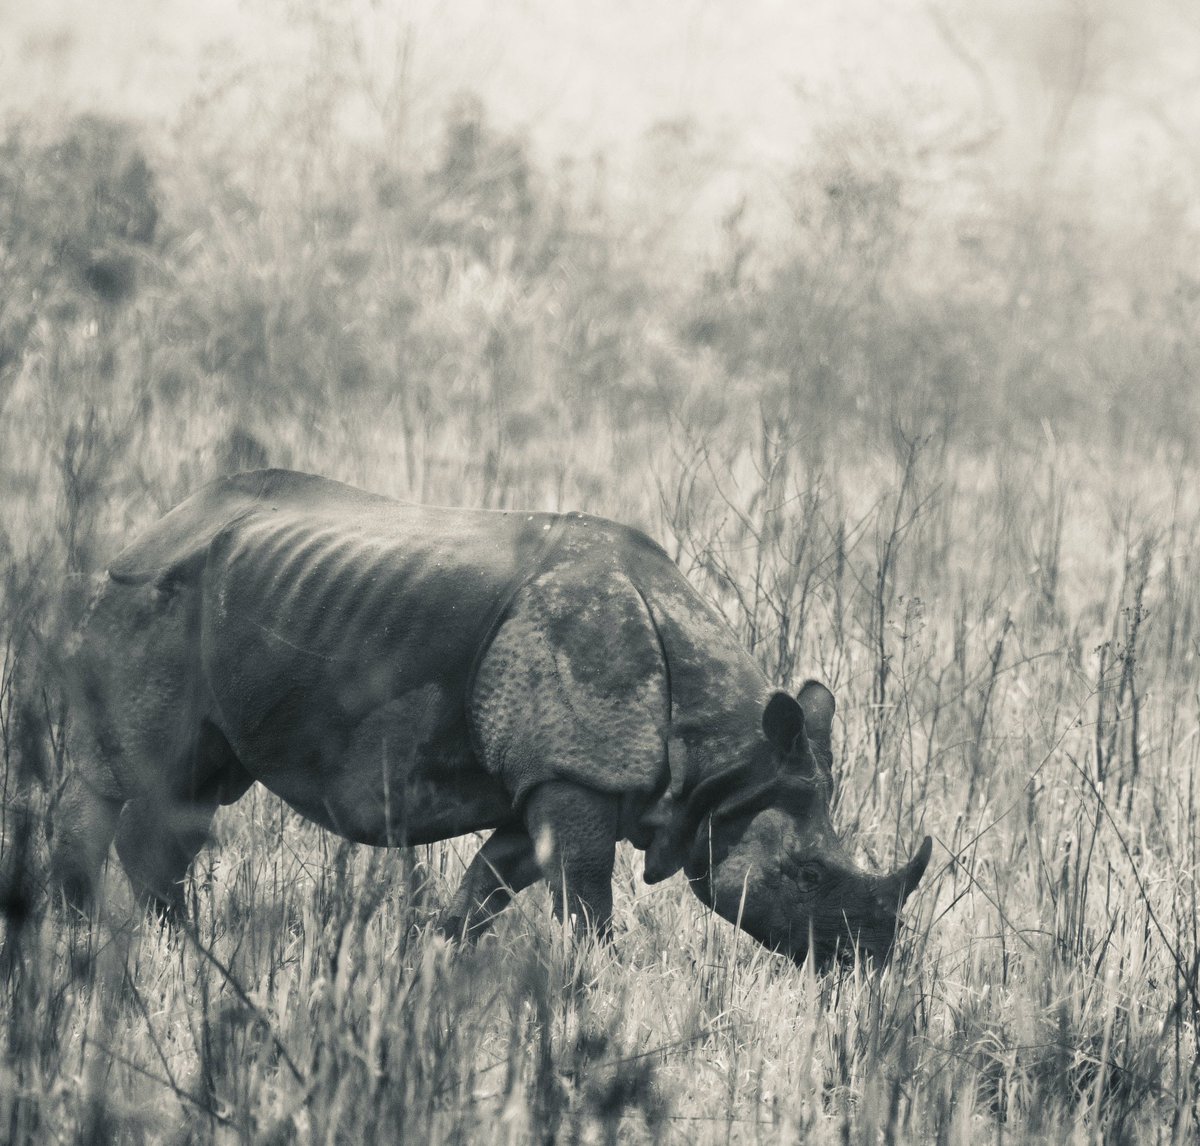 One horned Rhinoceros at Manas NP
#NikonIndia #NatgeoYourShot #bbcearth #assamtourism #IndiAves #sanctuaryasia #NatgeoIndia @dcpexpeditions